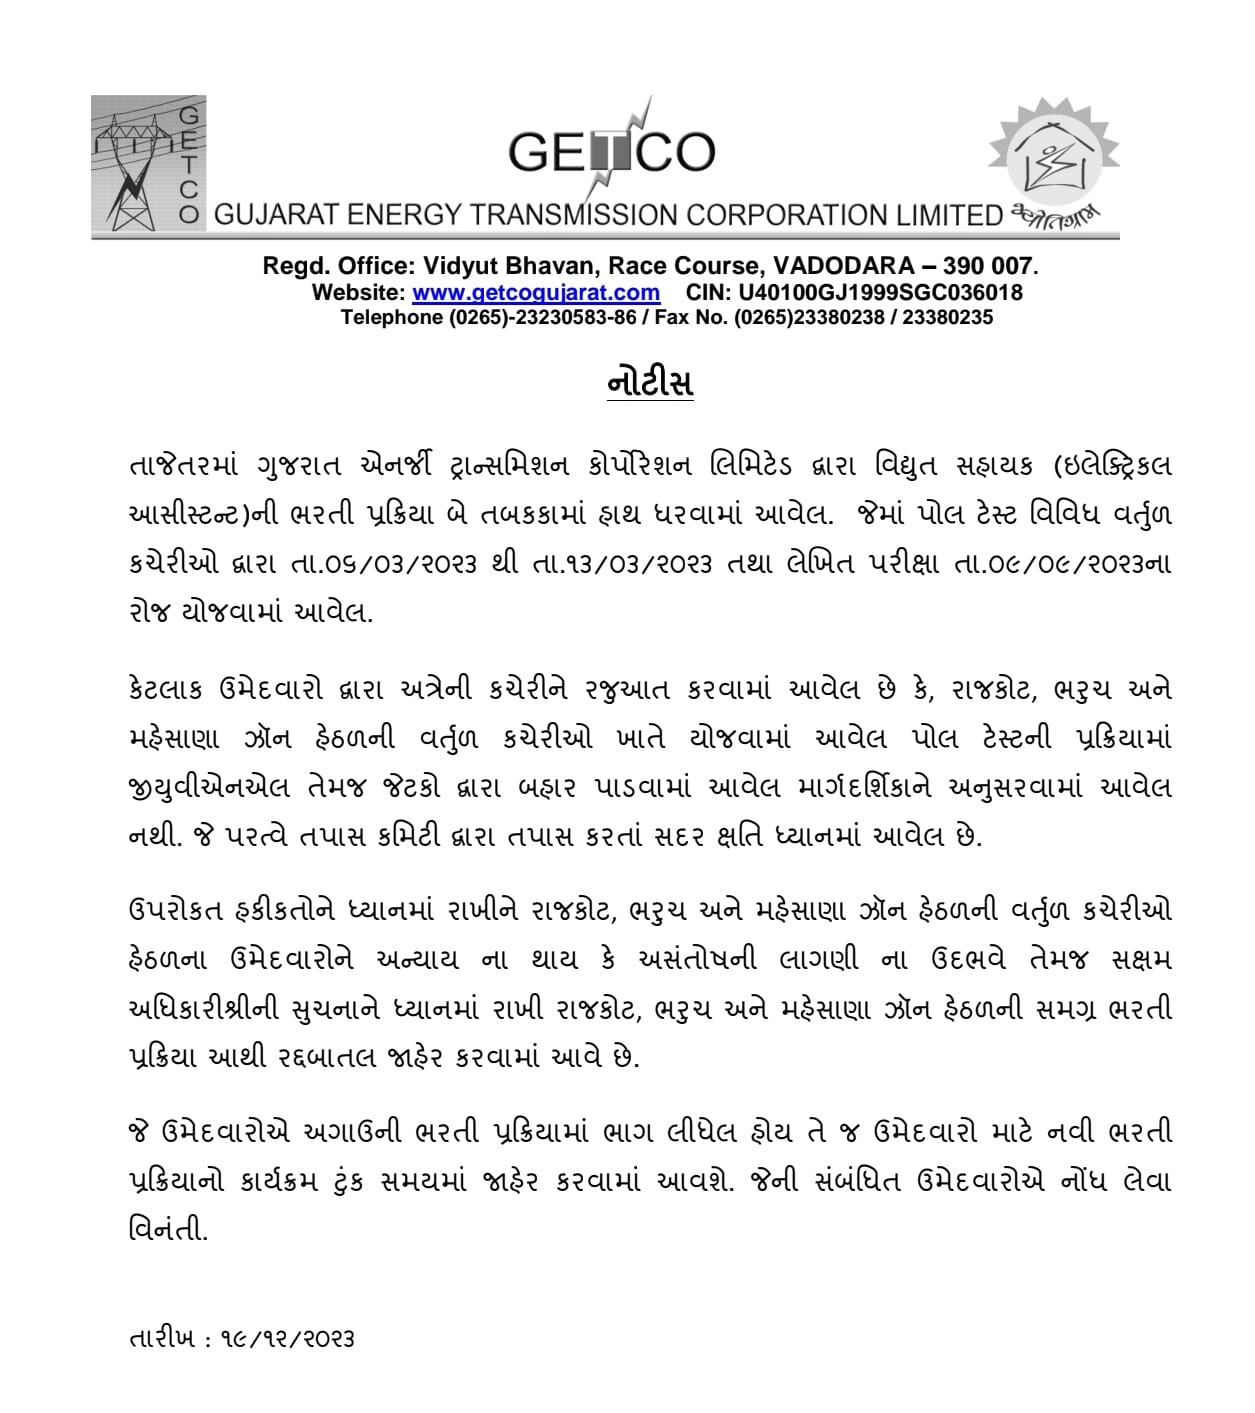 GETCO Exam Cancel: રાજ્યમાં વધુ એક પરીક્ષા રદ્દ, વિદ્યુત સહાયકની પરીક્ષા આ કારણે કરવામાં આવી રદ્દ